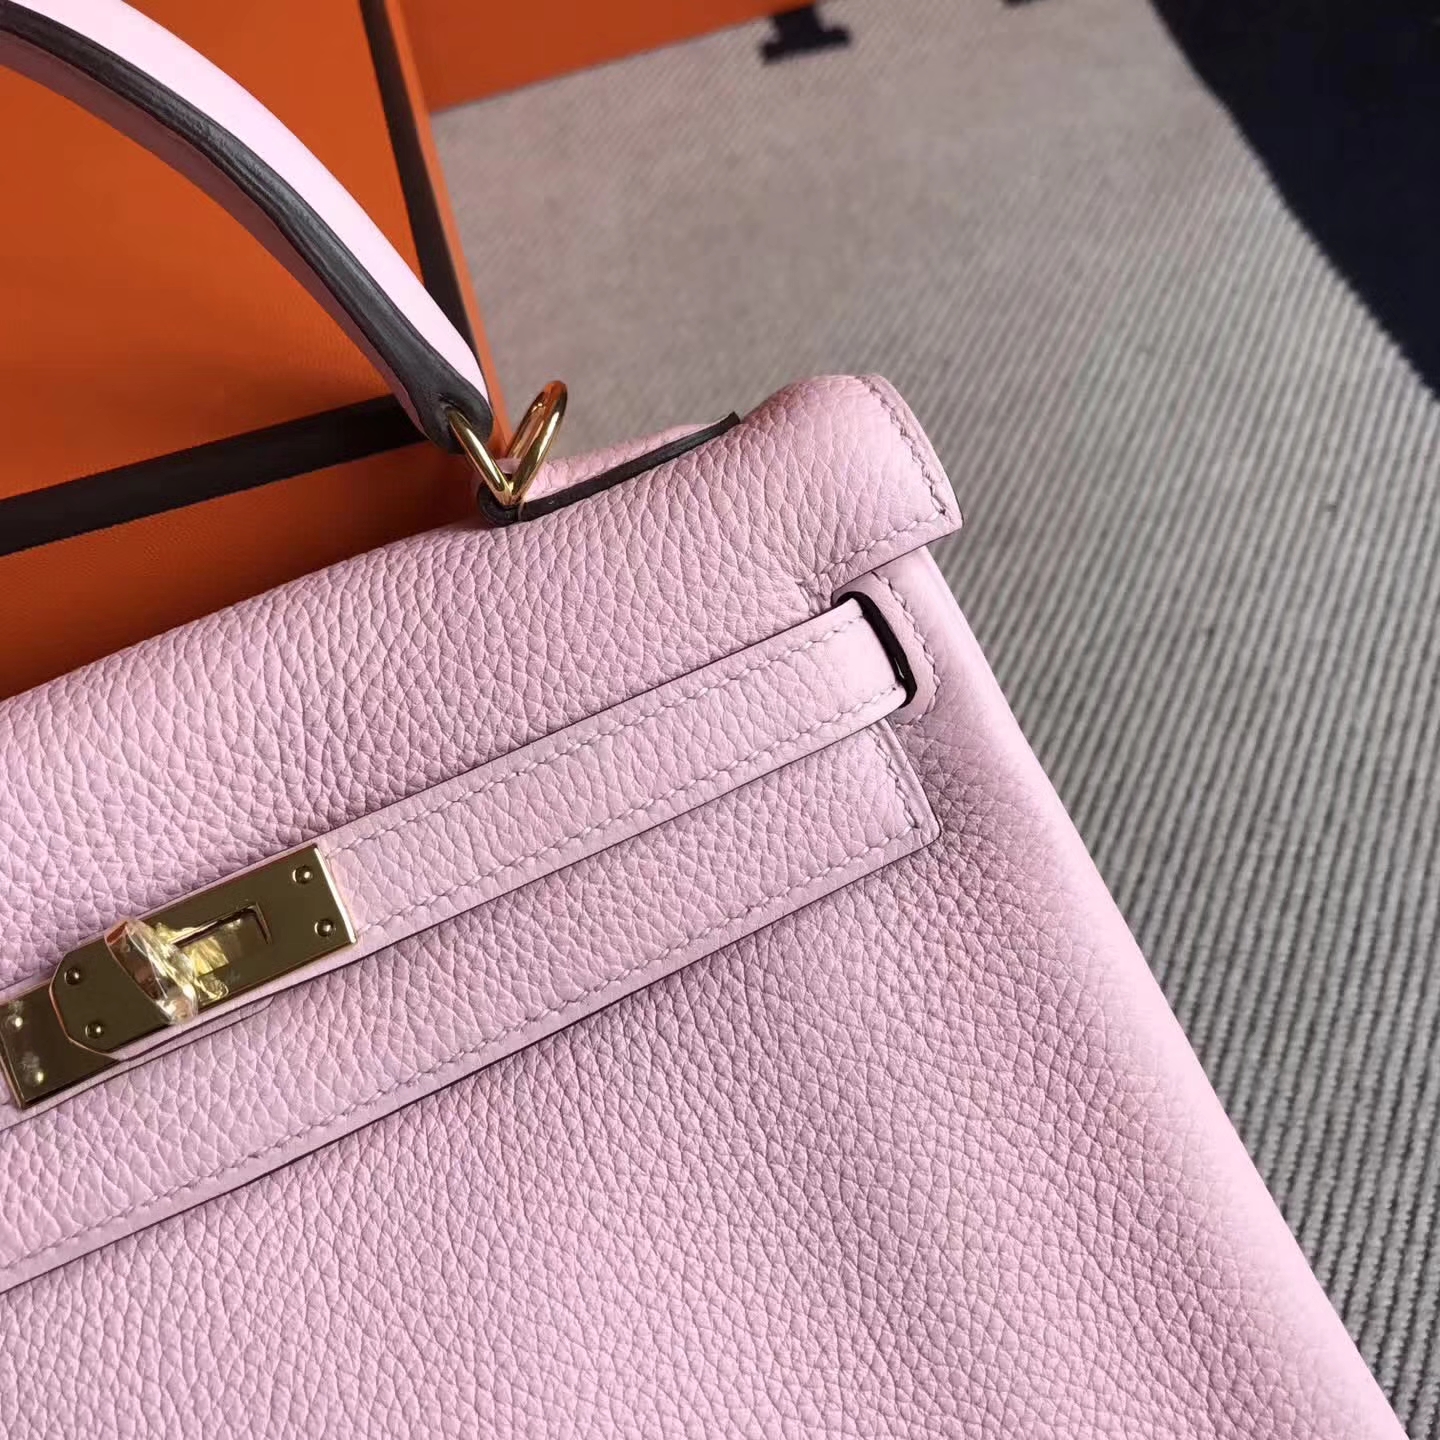 On Sale Hermes 3Q New Pink Togo Leather Kelly25cm Handbag Gold Hardware